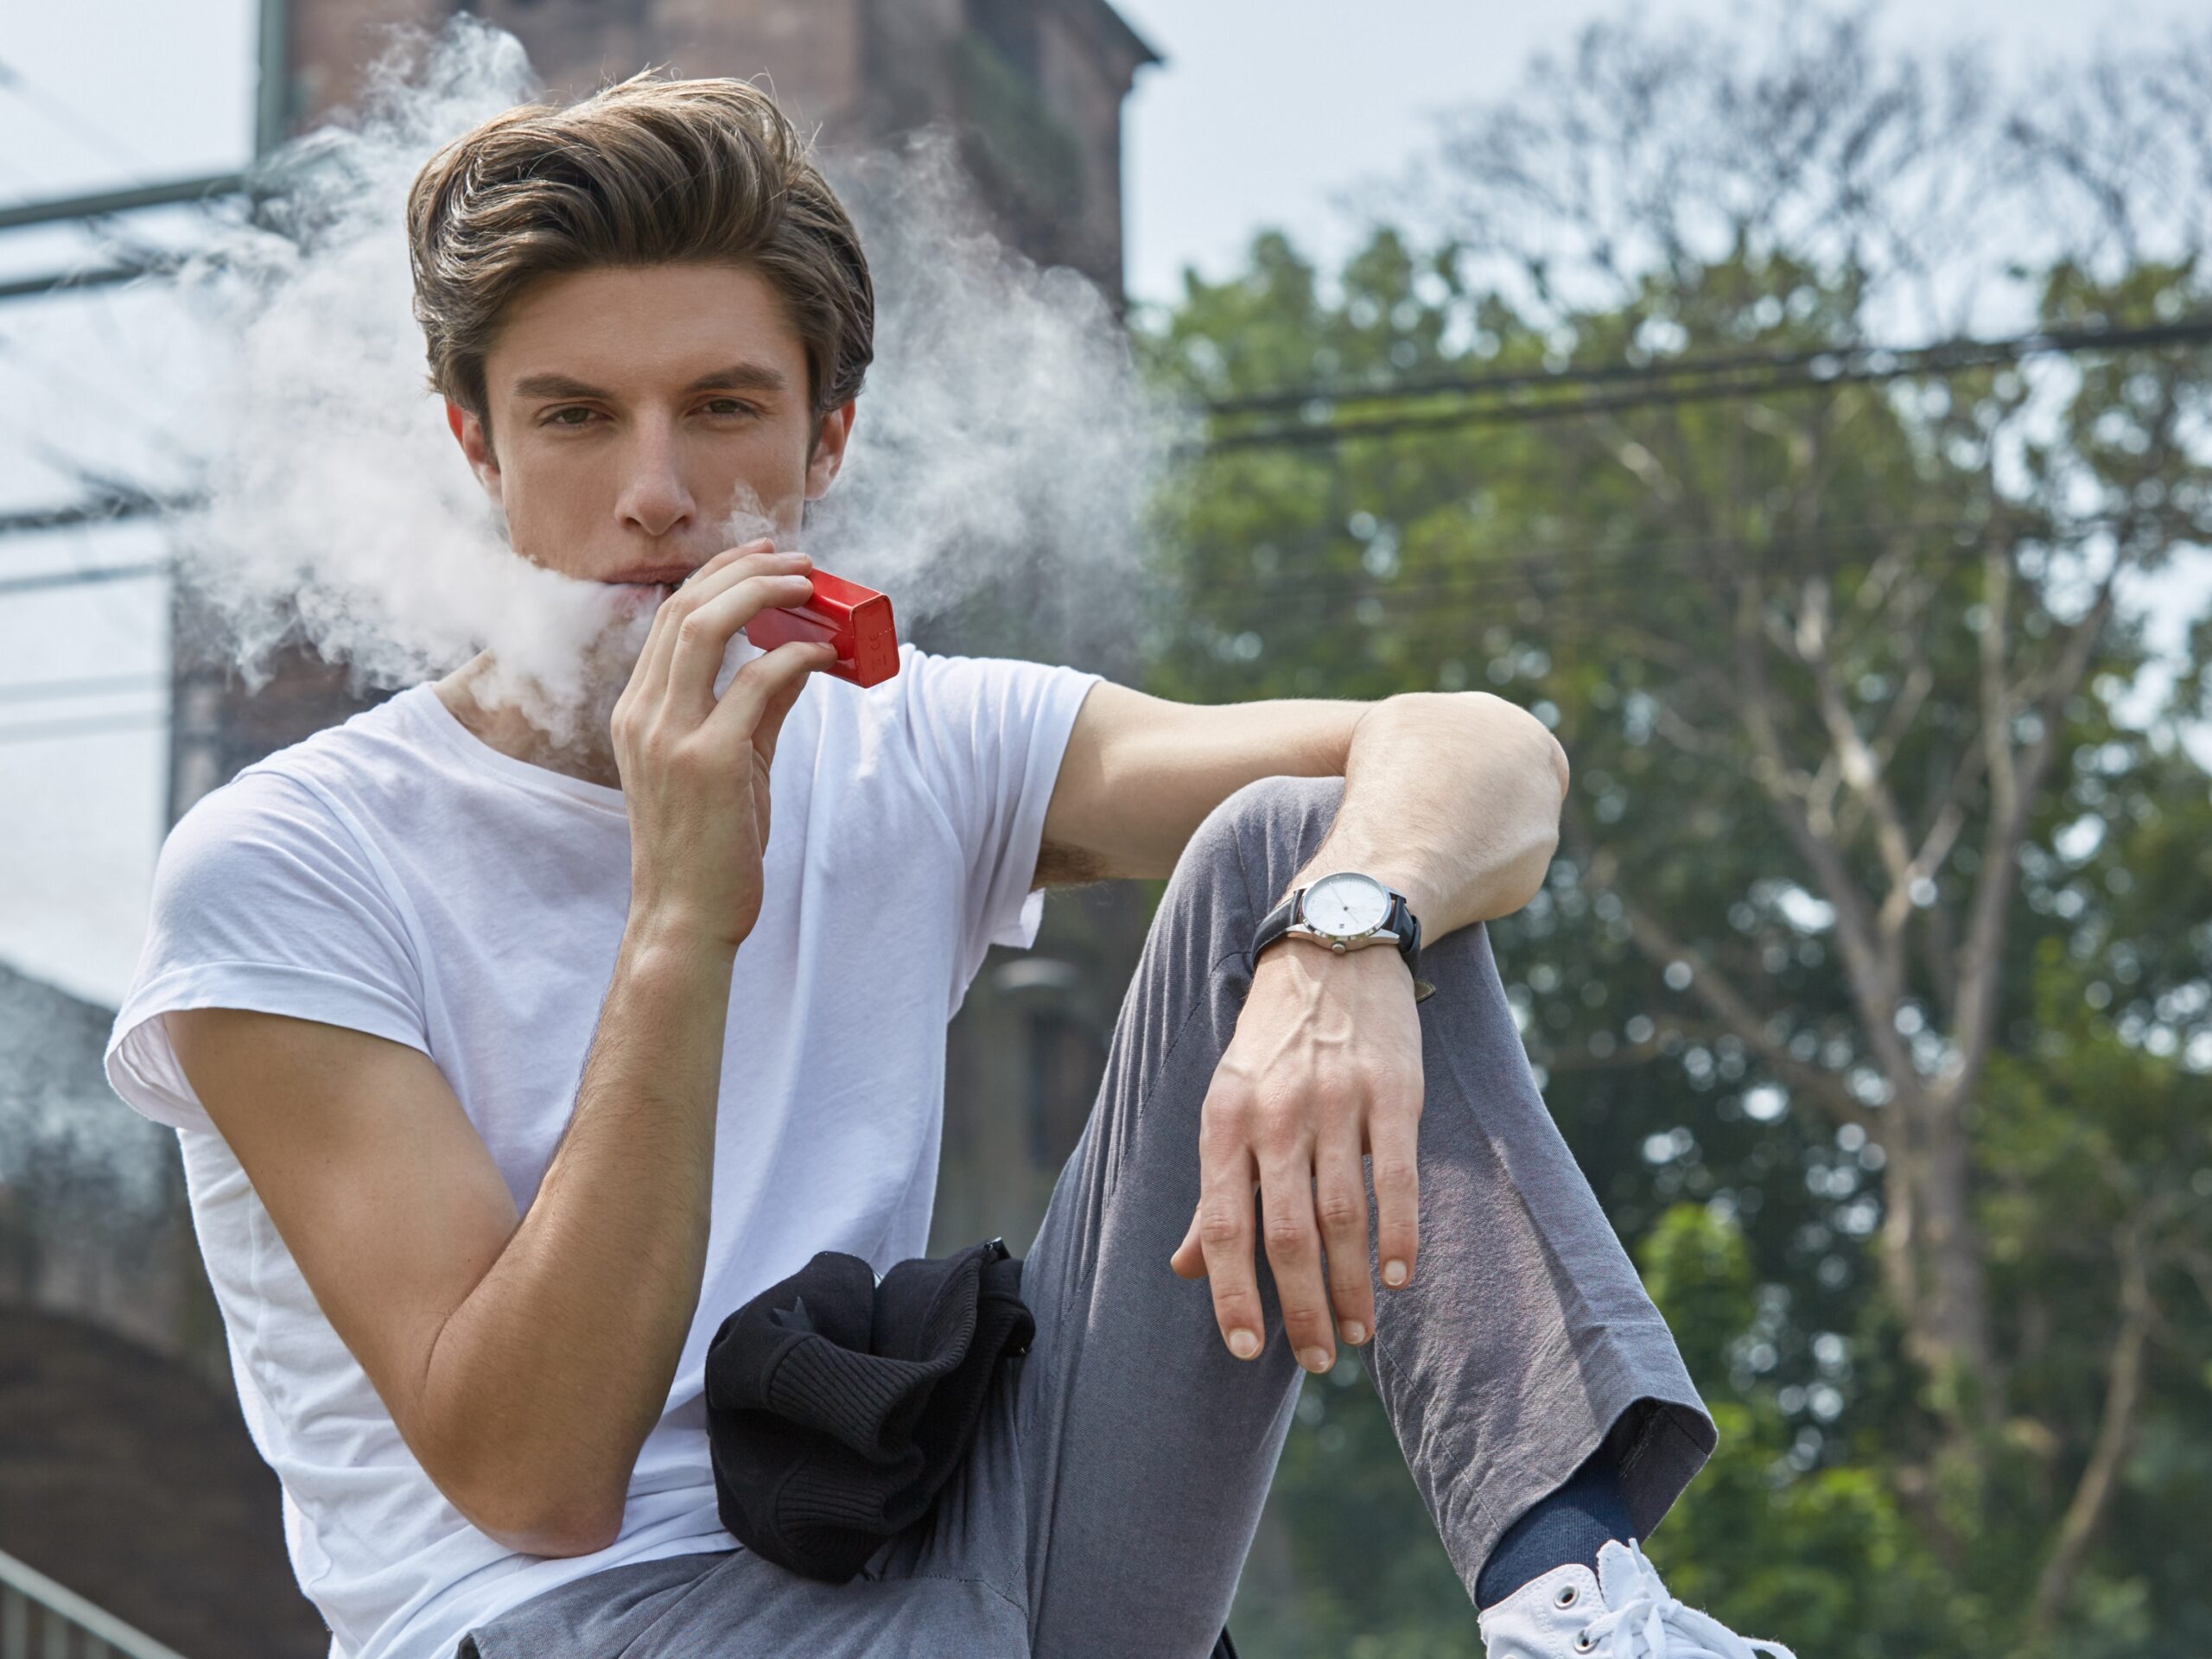 Suchtexperten warnen Jugendliche: Der gefährliche Hype um Einweg-E- Zigaretten